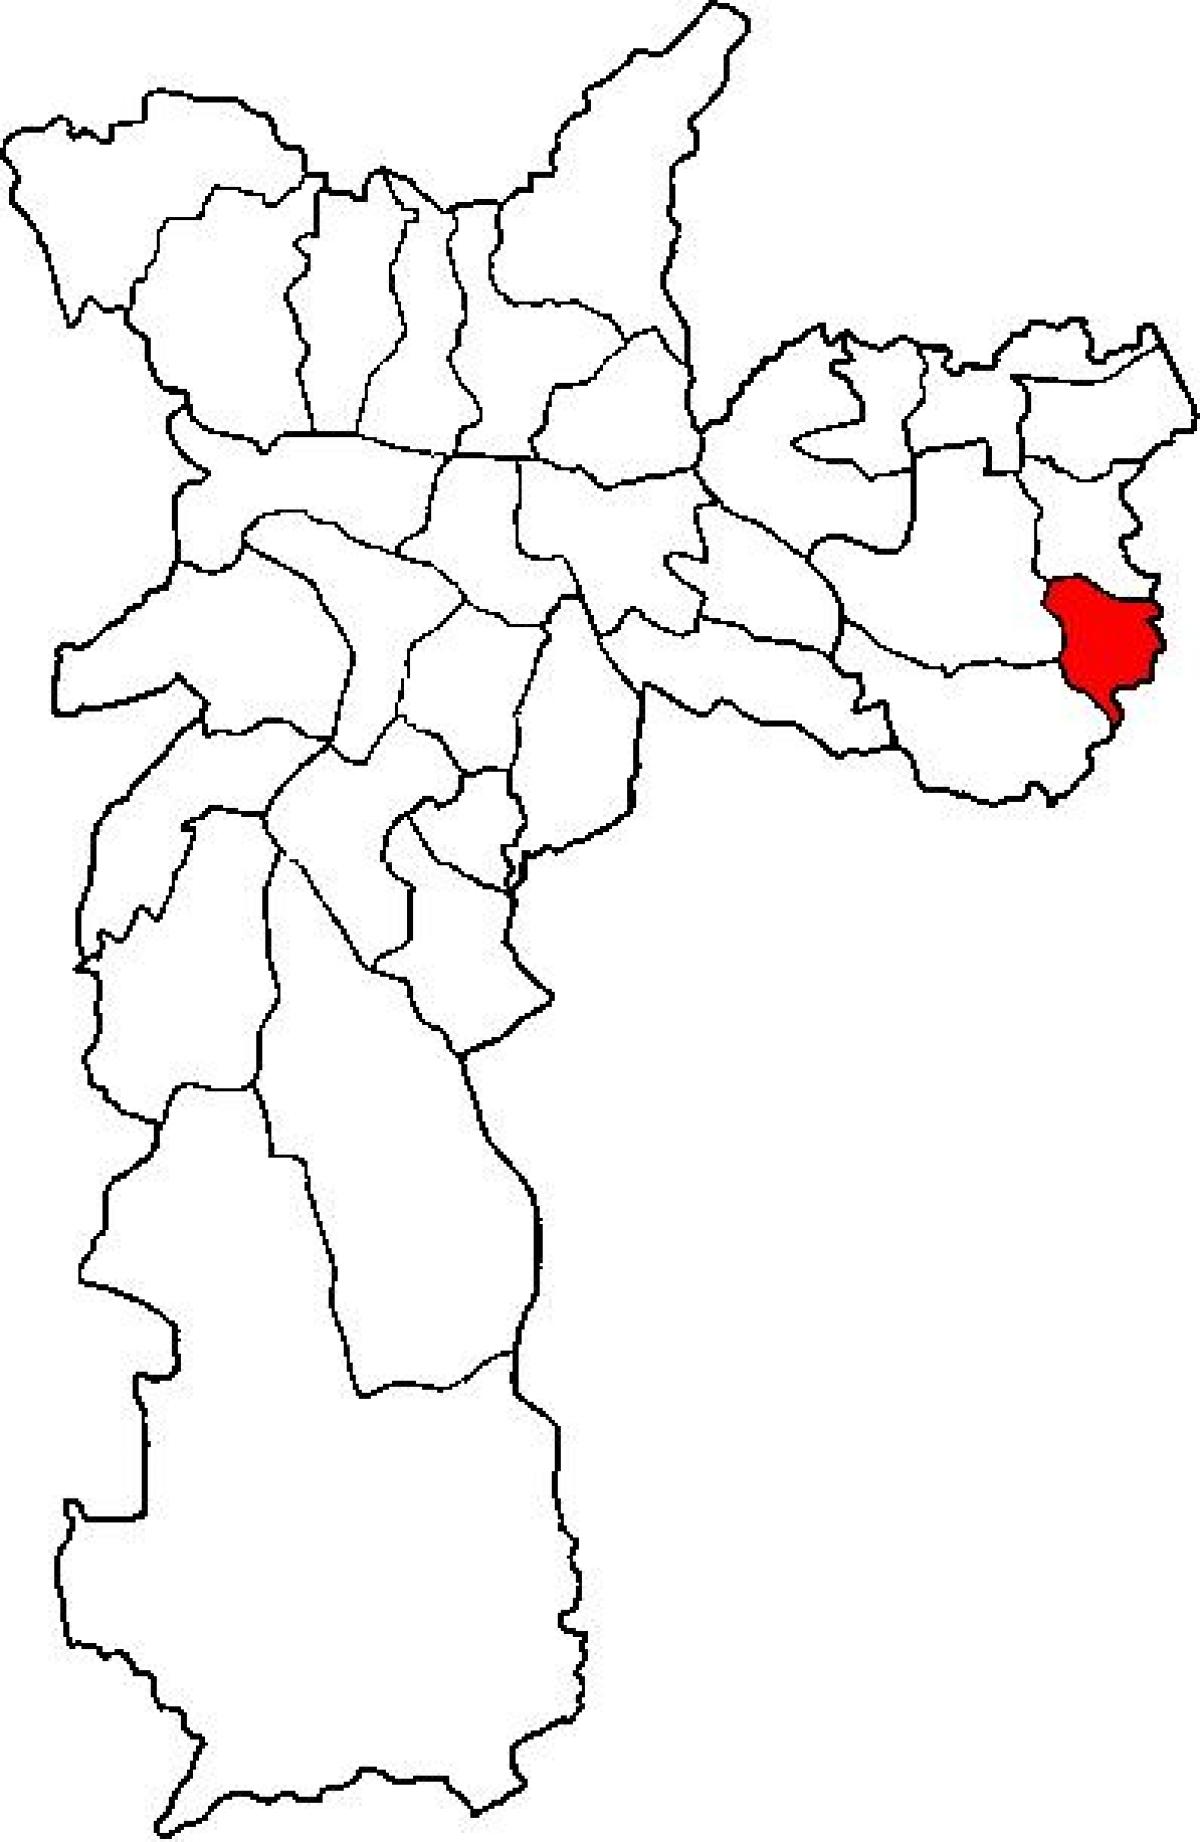 Карта на Cidade Tiradentes област